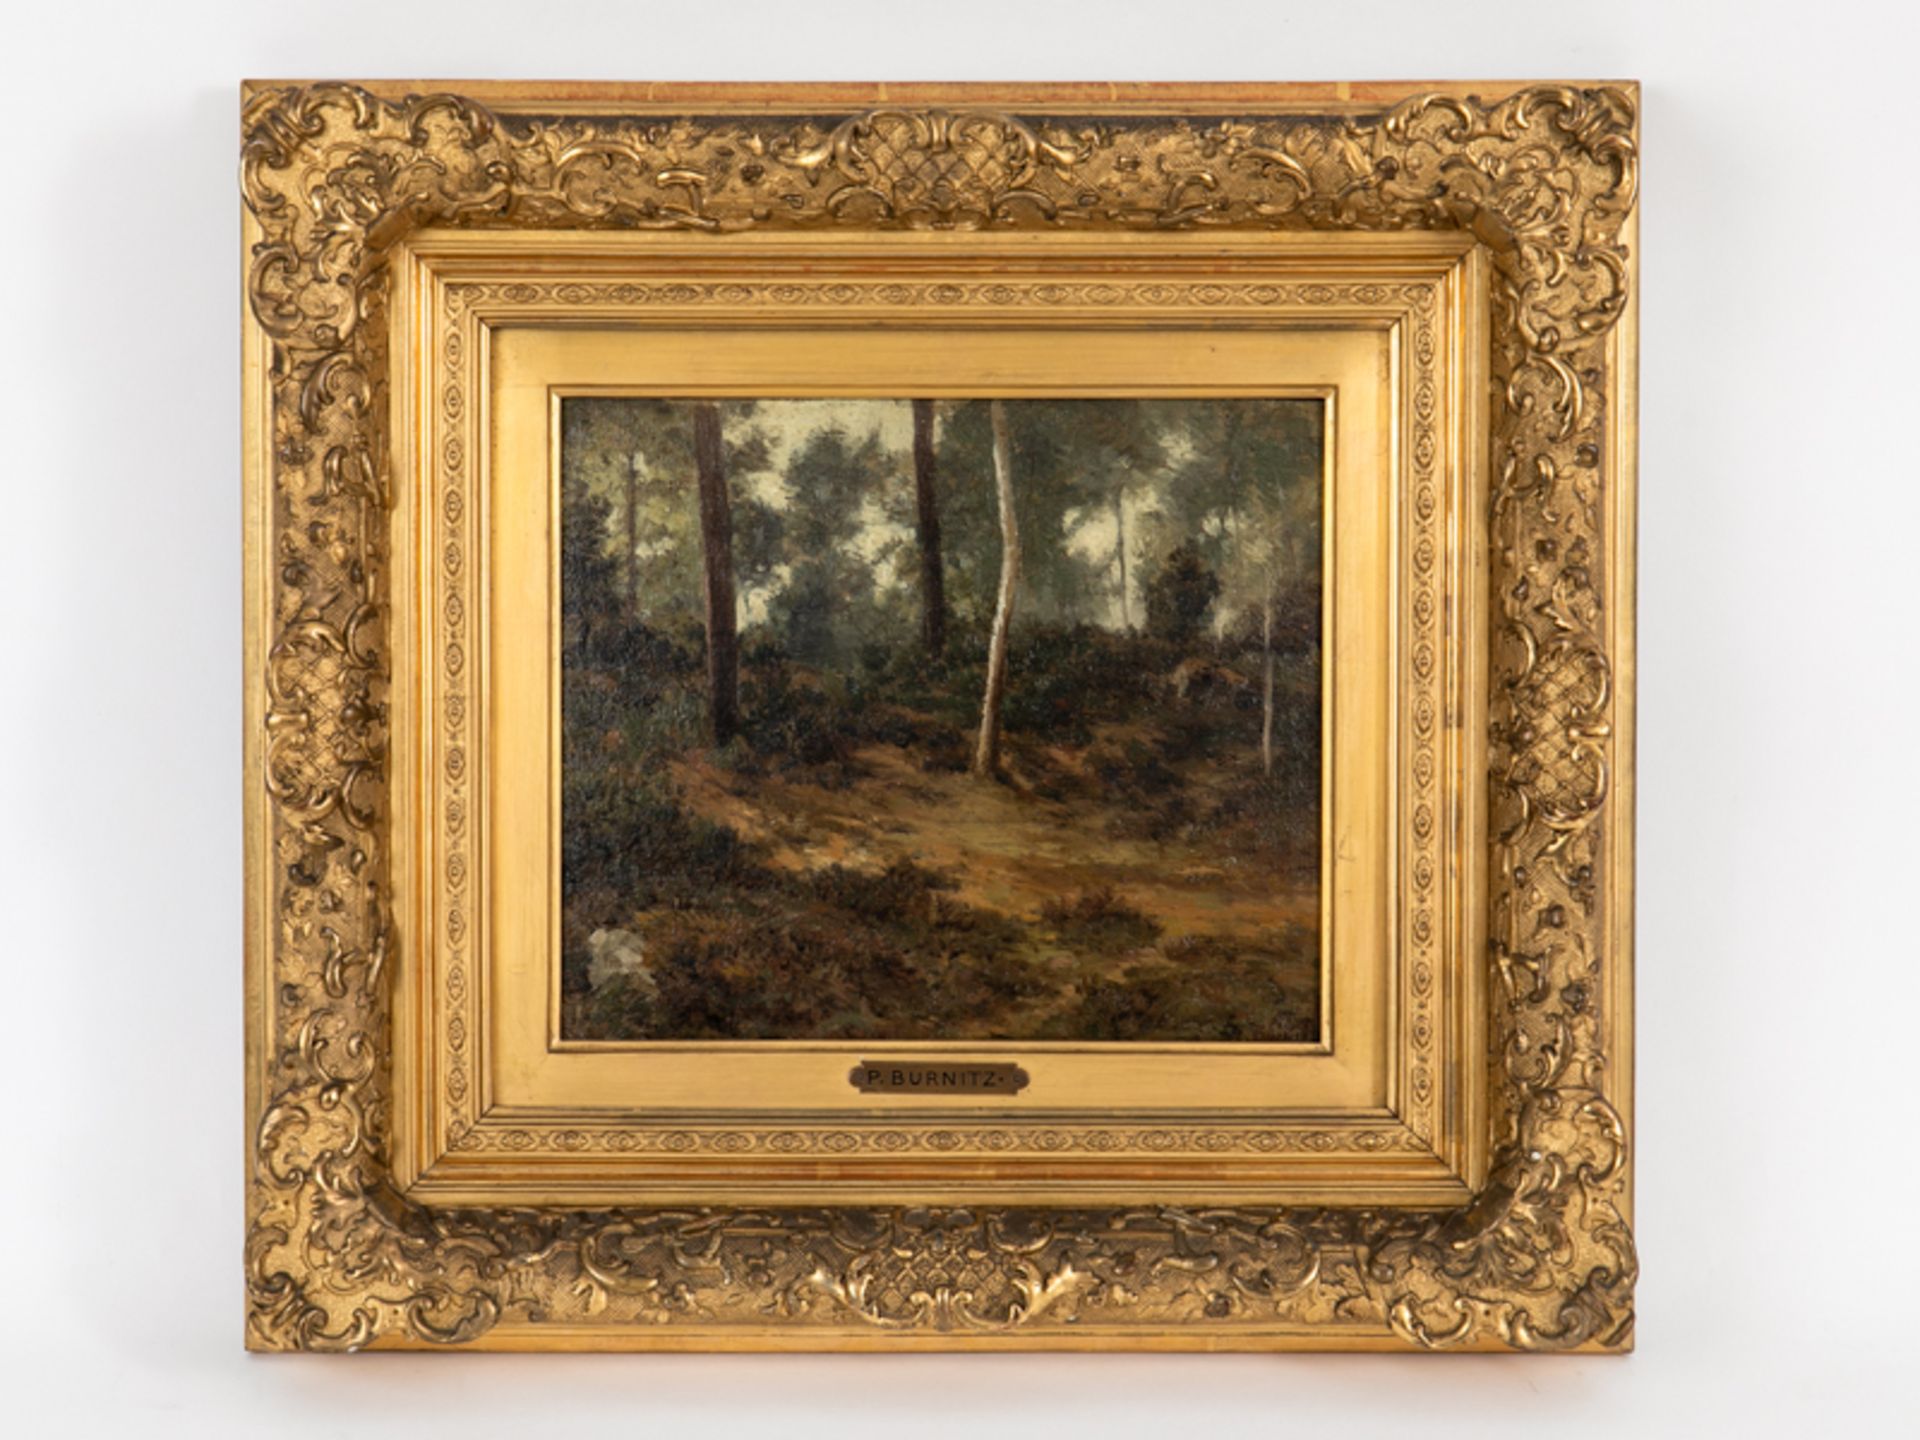 Burnitz, Carl Peter (1824 - 1886). Öl auf Malkarton; "Waldpartie"; studienartiges Landschaftsm